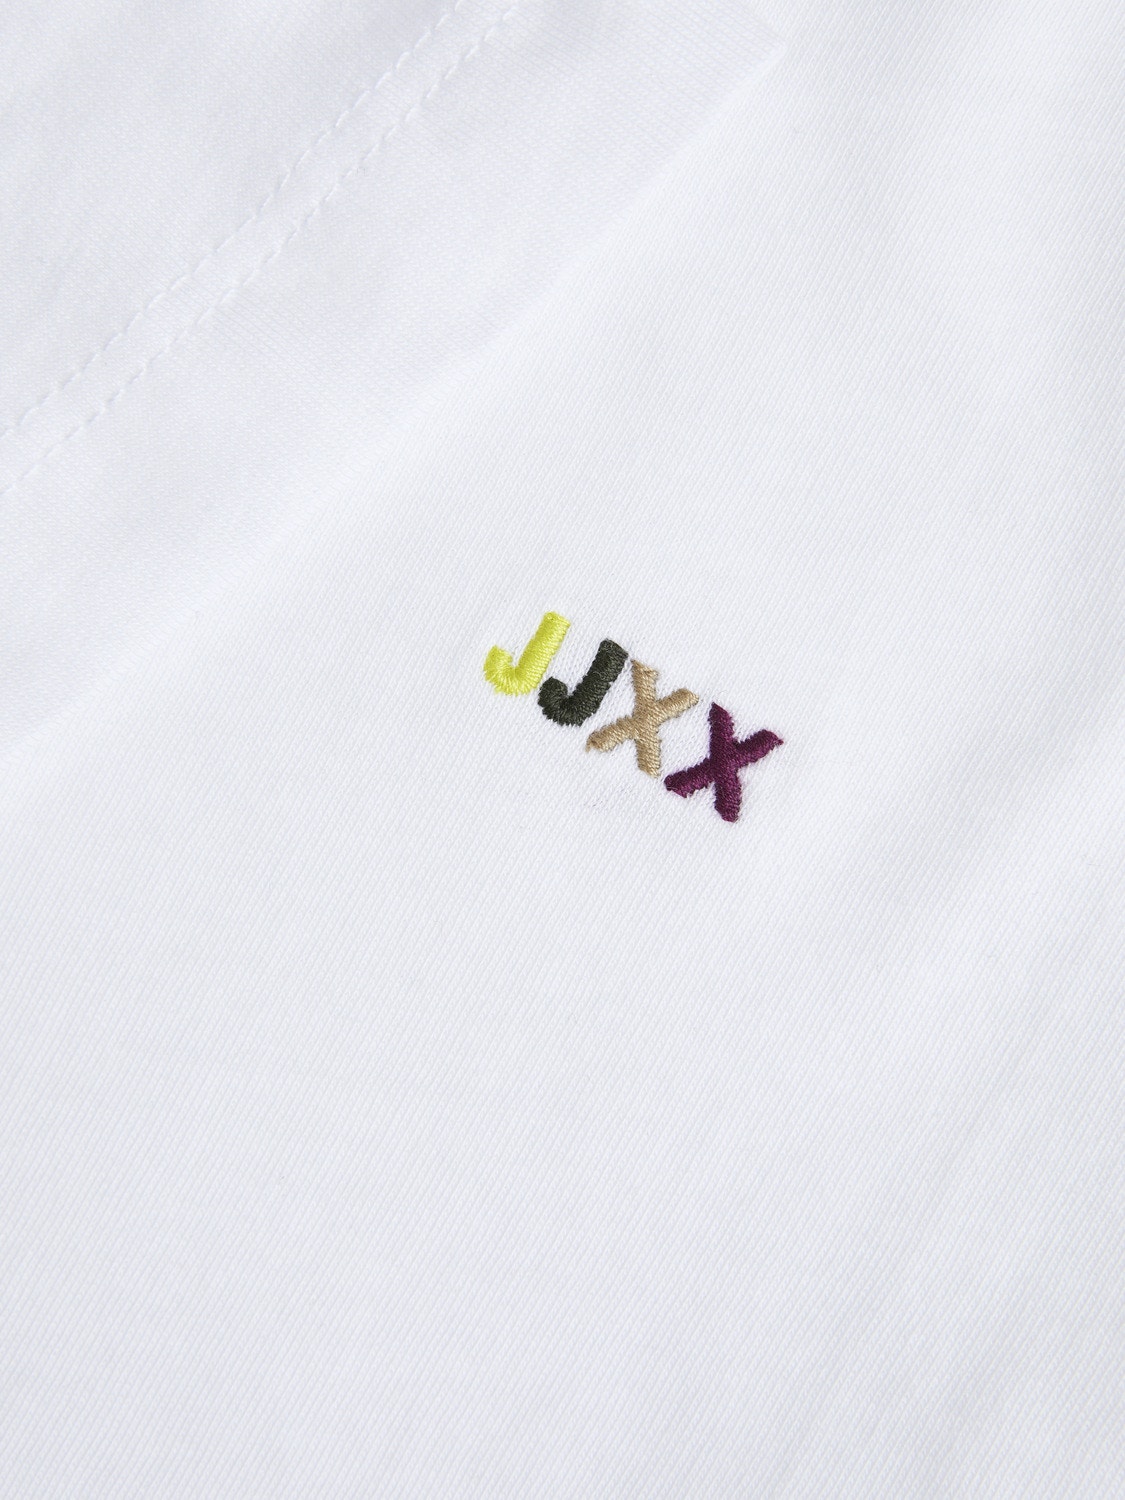 JJXX JXANNA T-shirt -Bright White - 12236267